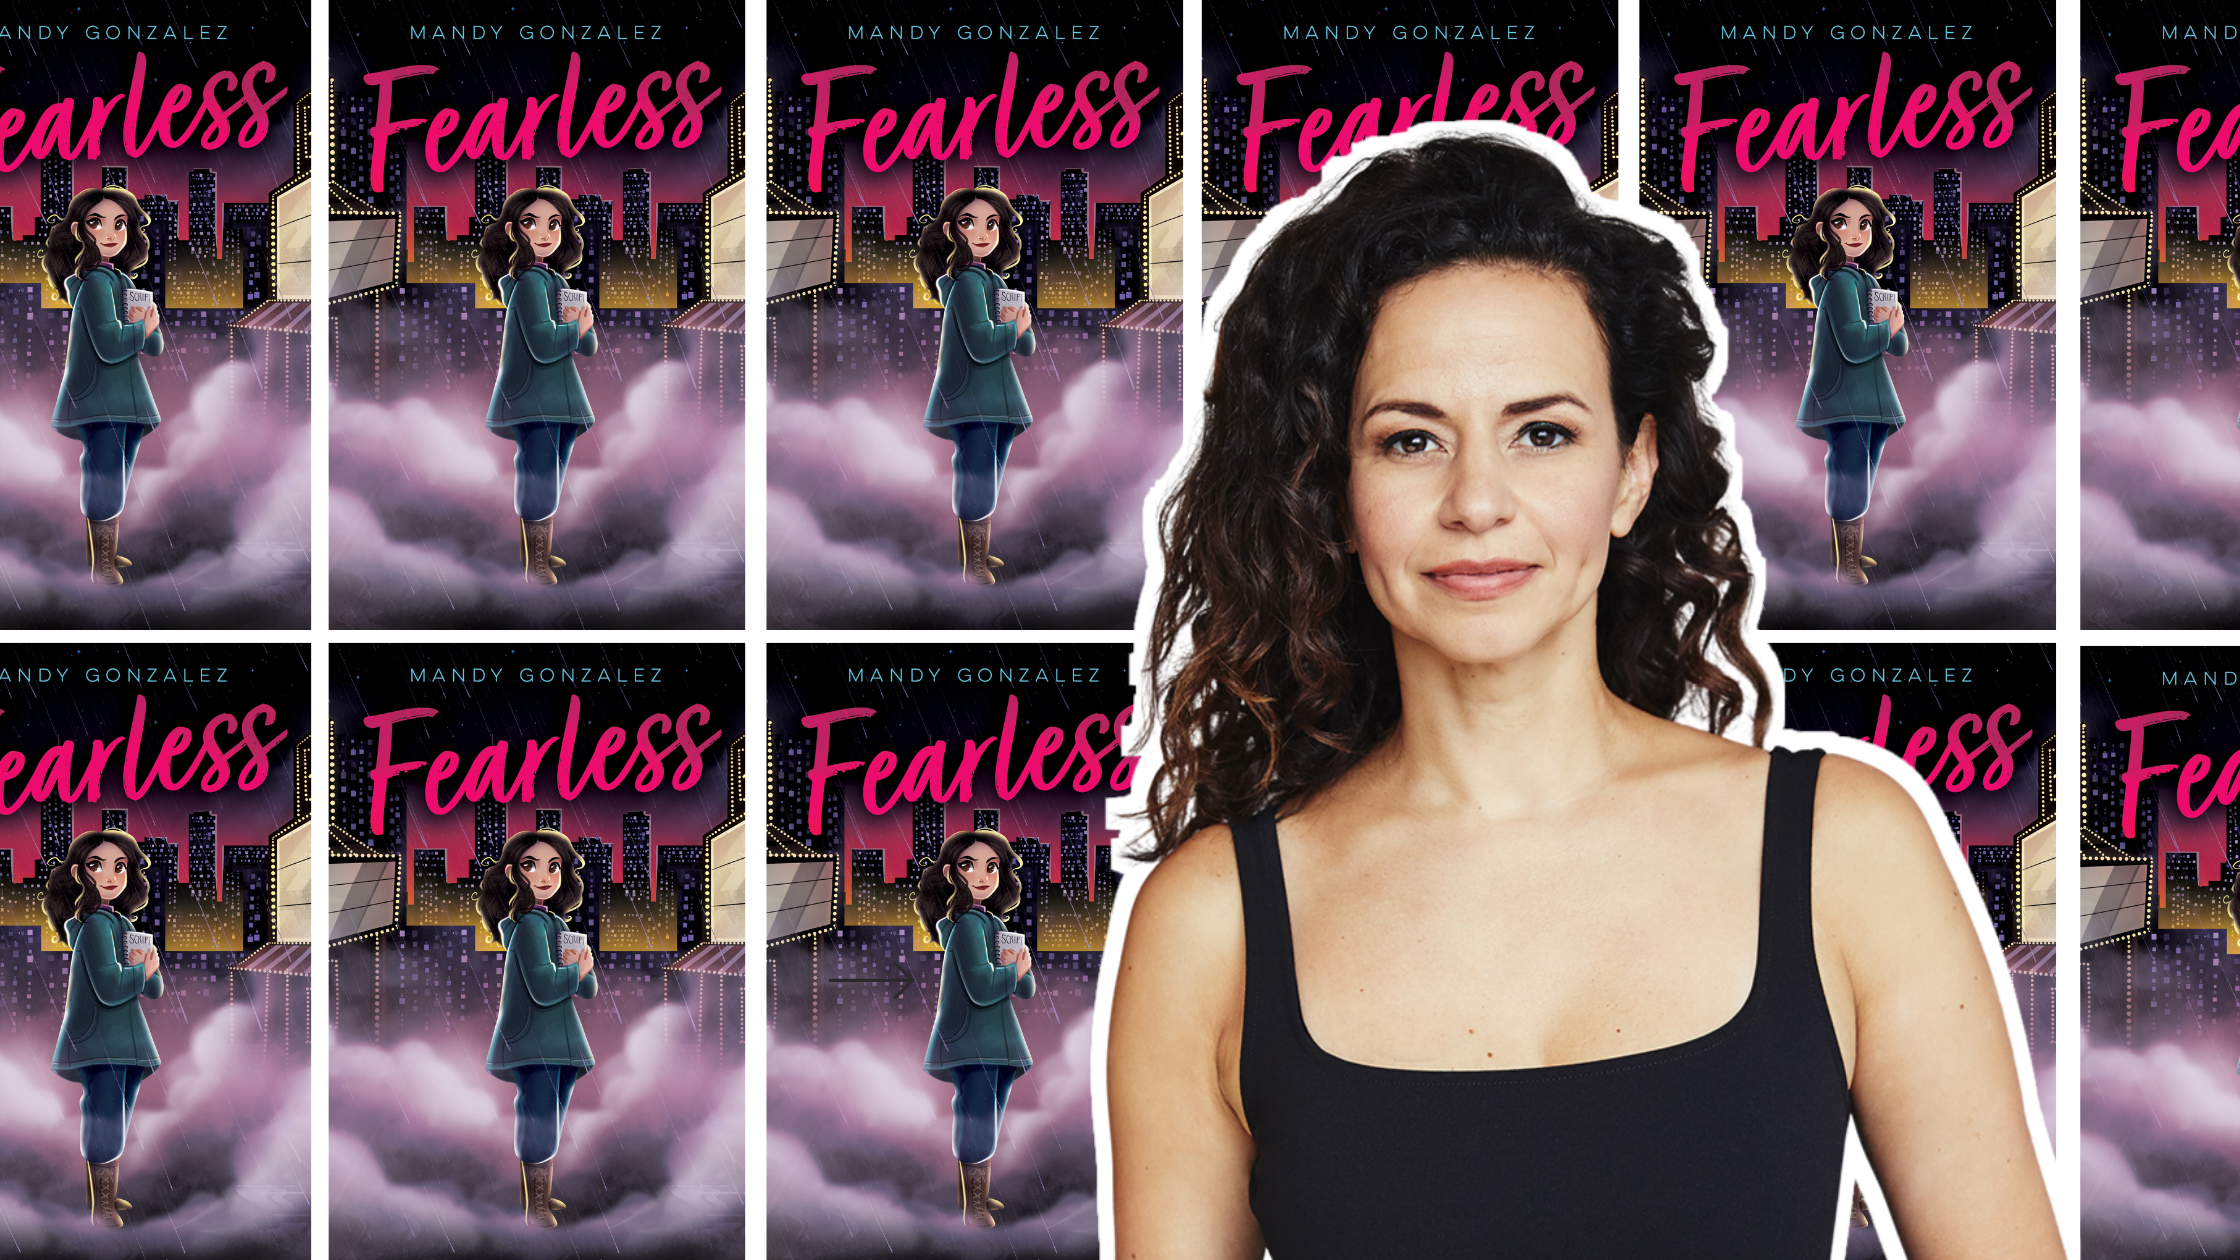 Mandy Gonzalez Is “Fearless”